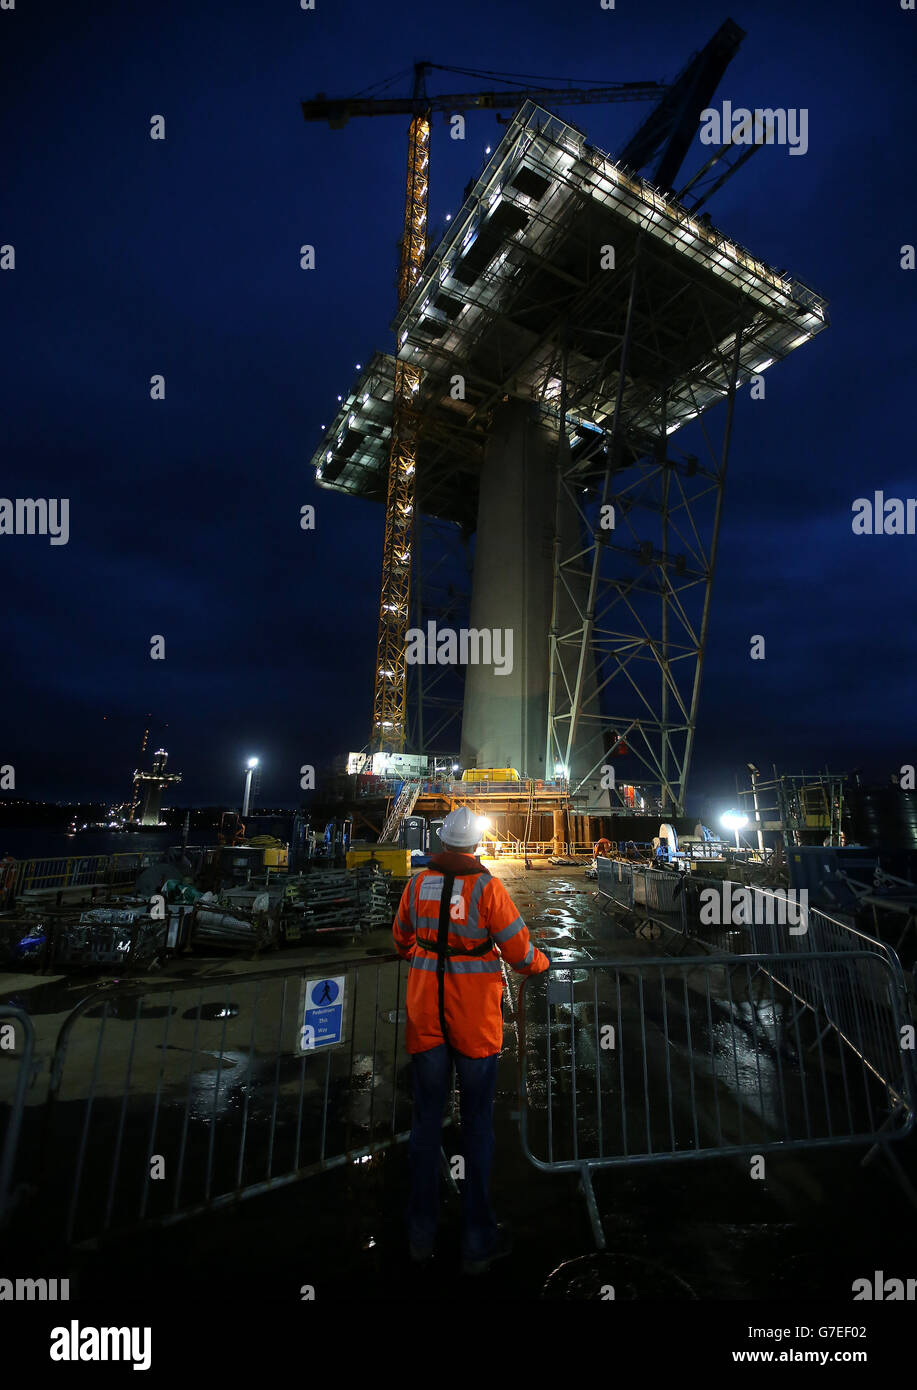 Les travaux se poursuivent tout au long de la nuit à la tour centrale sur Beamer Rock dans le Forth, en Écosse, sur le Queensferry Crossing qui doit être achevé en 2016 et atteindra 207 mètres de hauteur. Banque D'Images